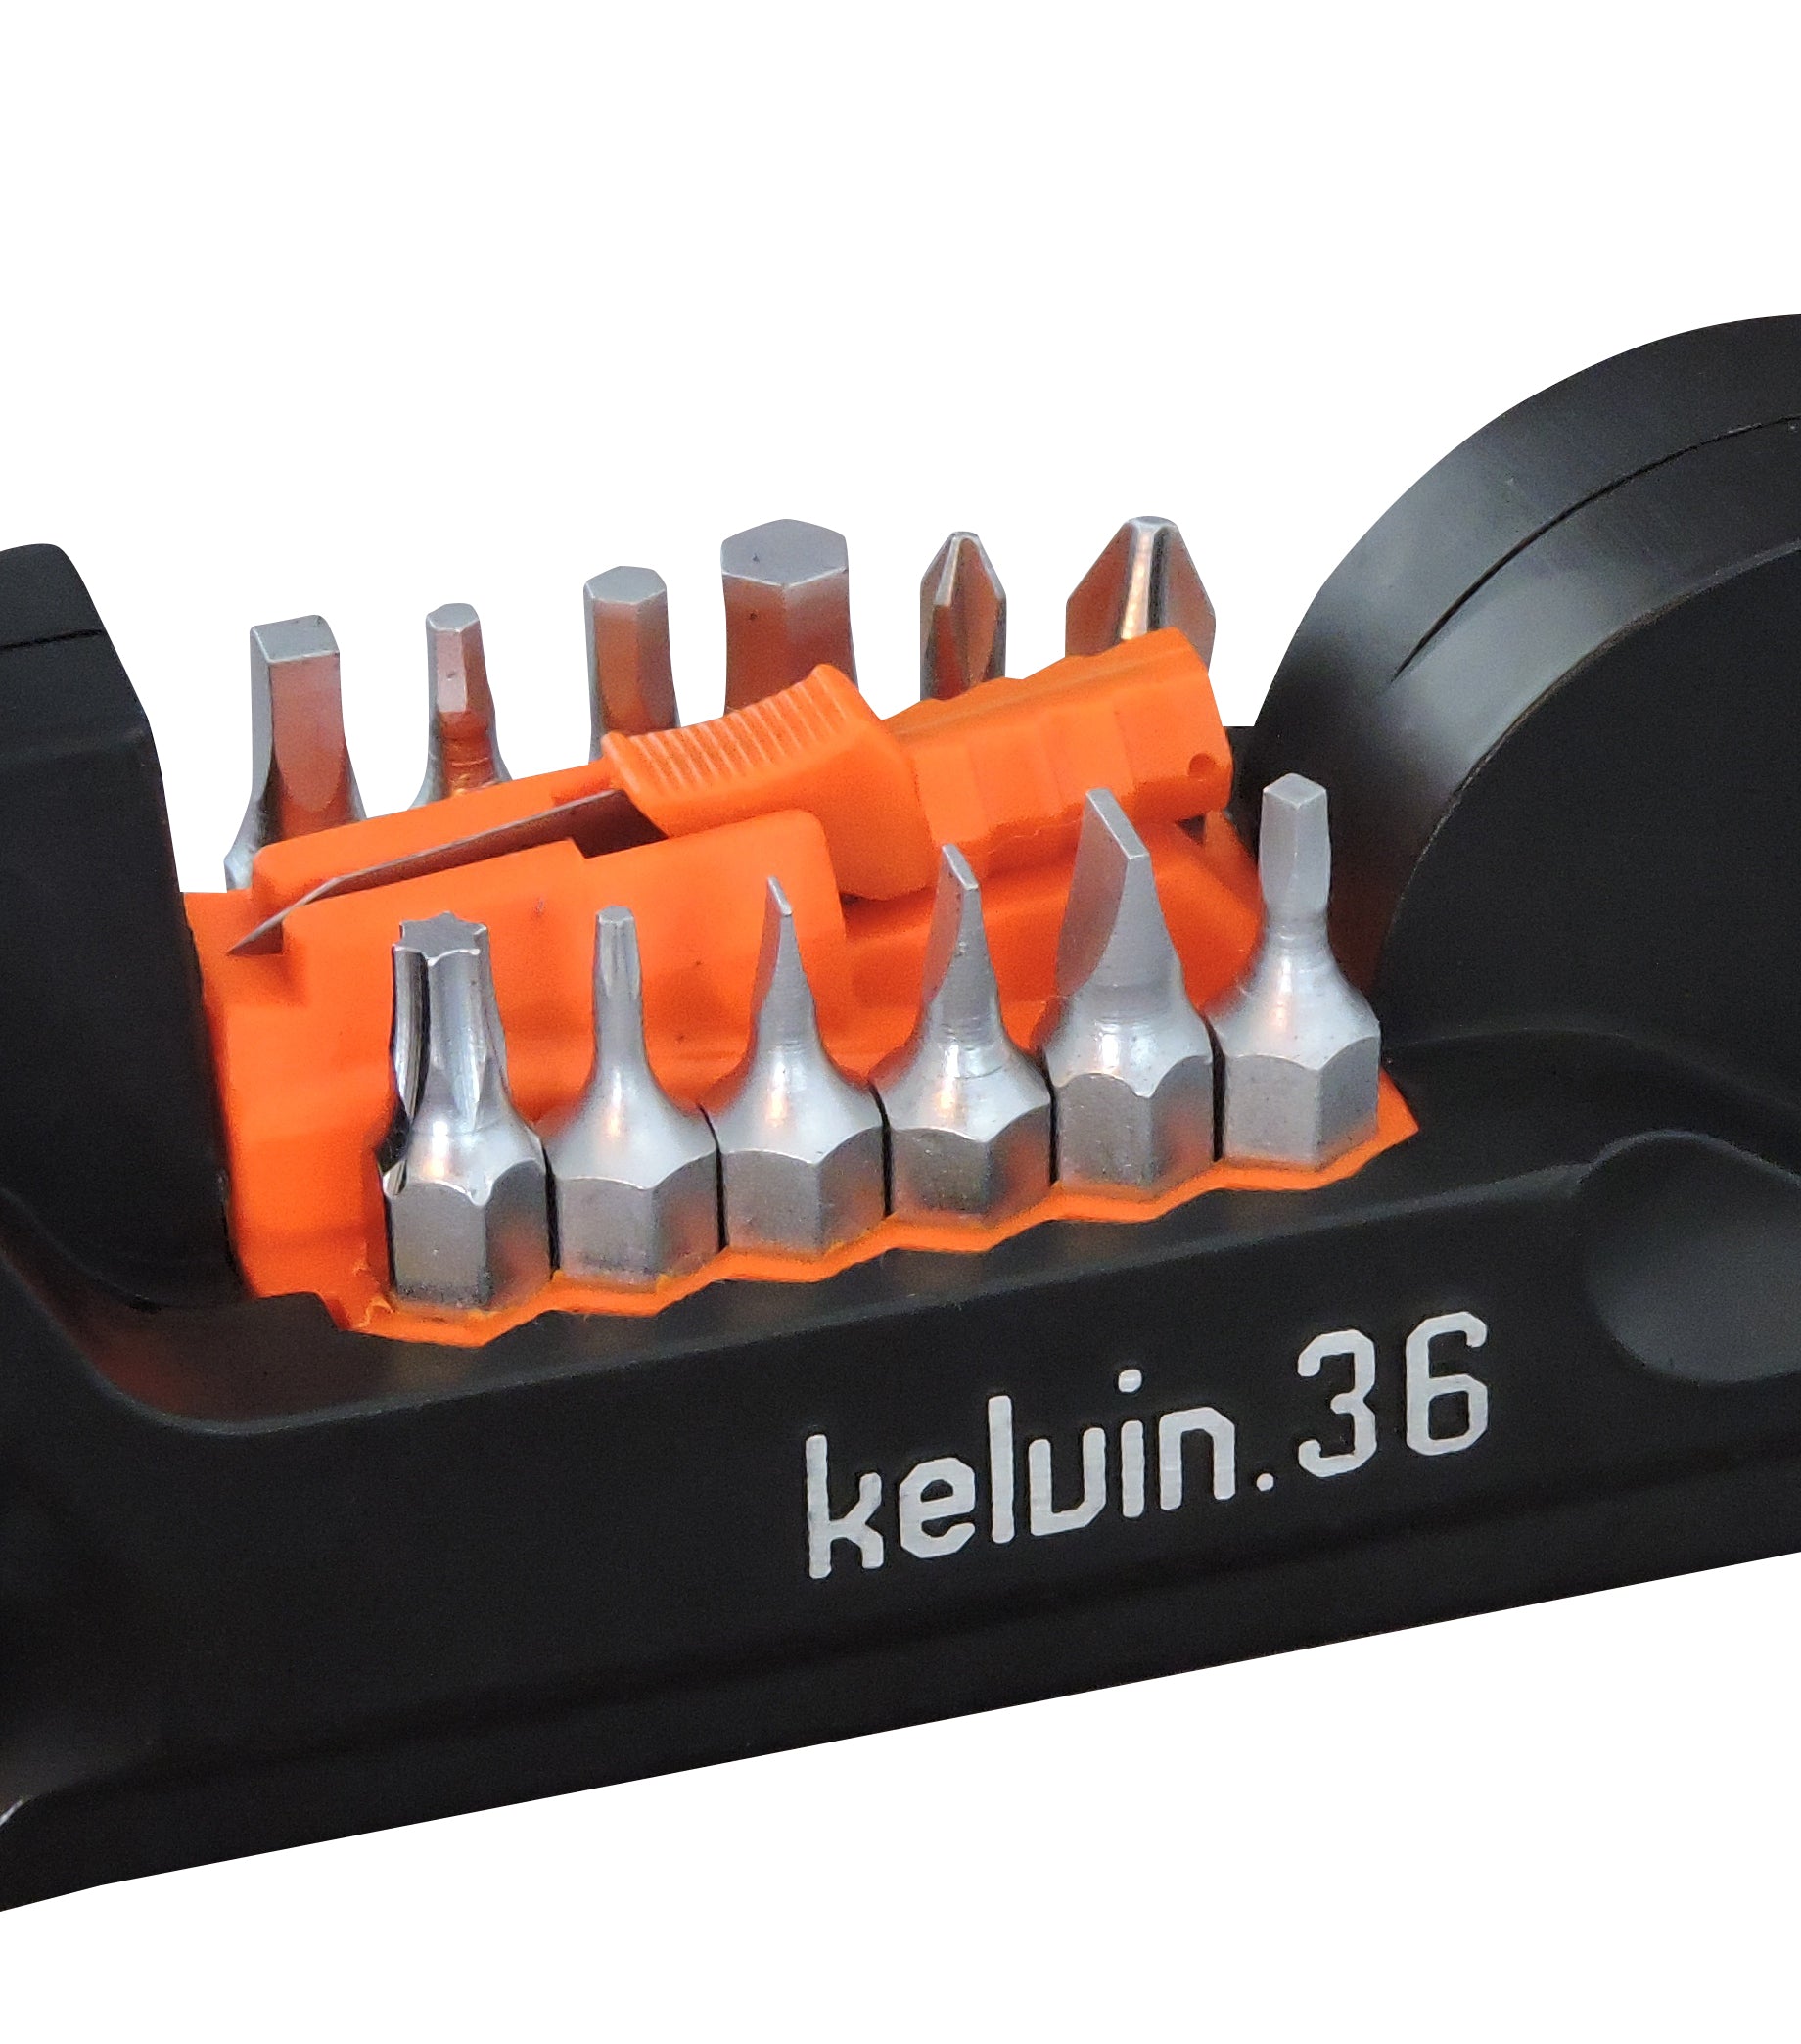 Kelvin 36 - The Ulitmate Urban Multitool - Black